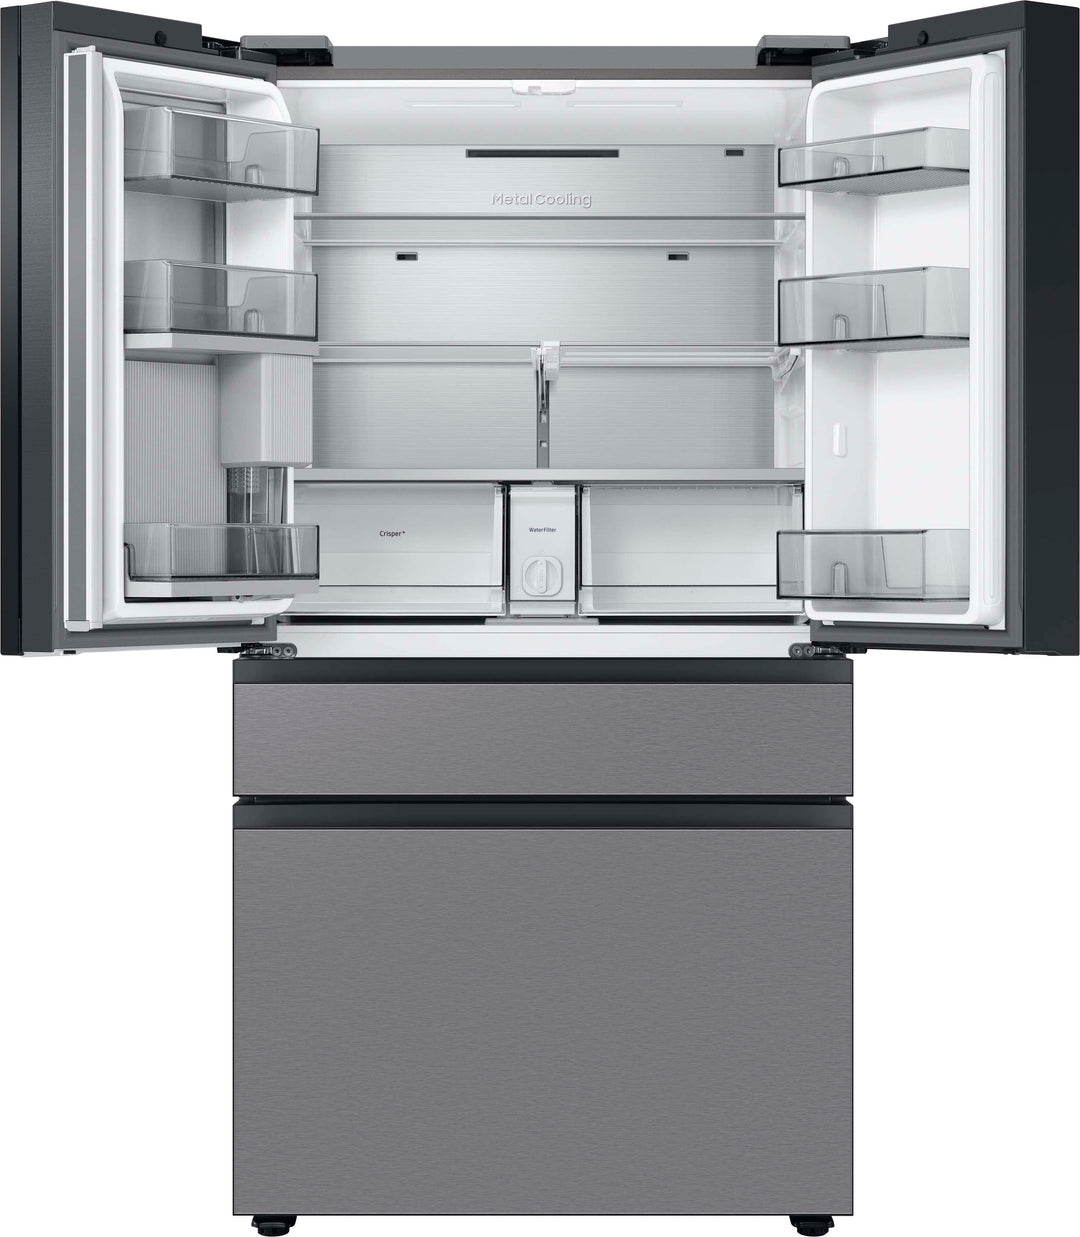 Samsung - Bespoke 29 cu. ft 4-Door French Door Refrigerator with Beverage Center - Stainless steel_5